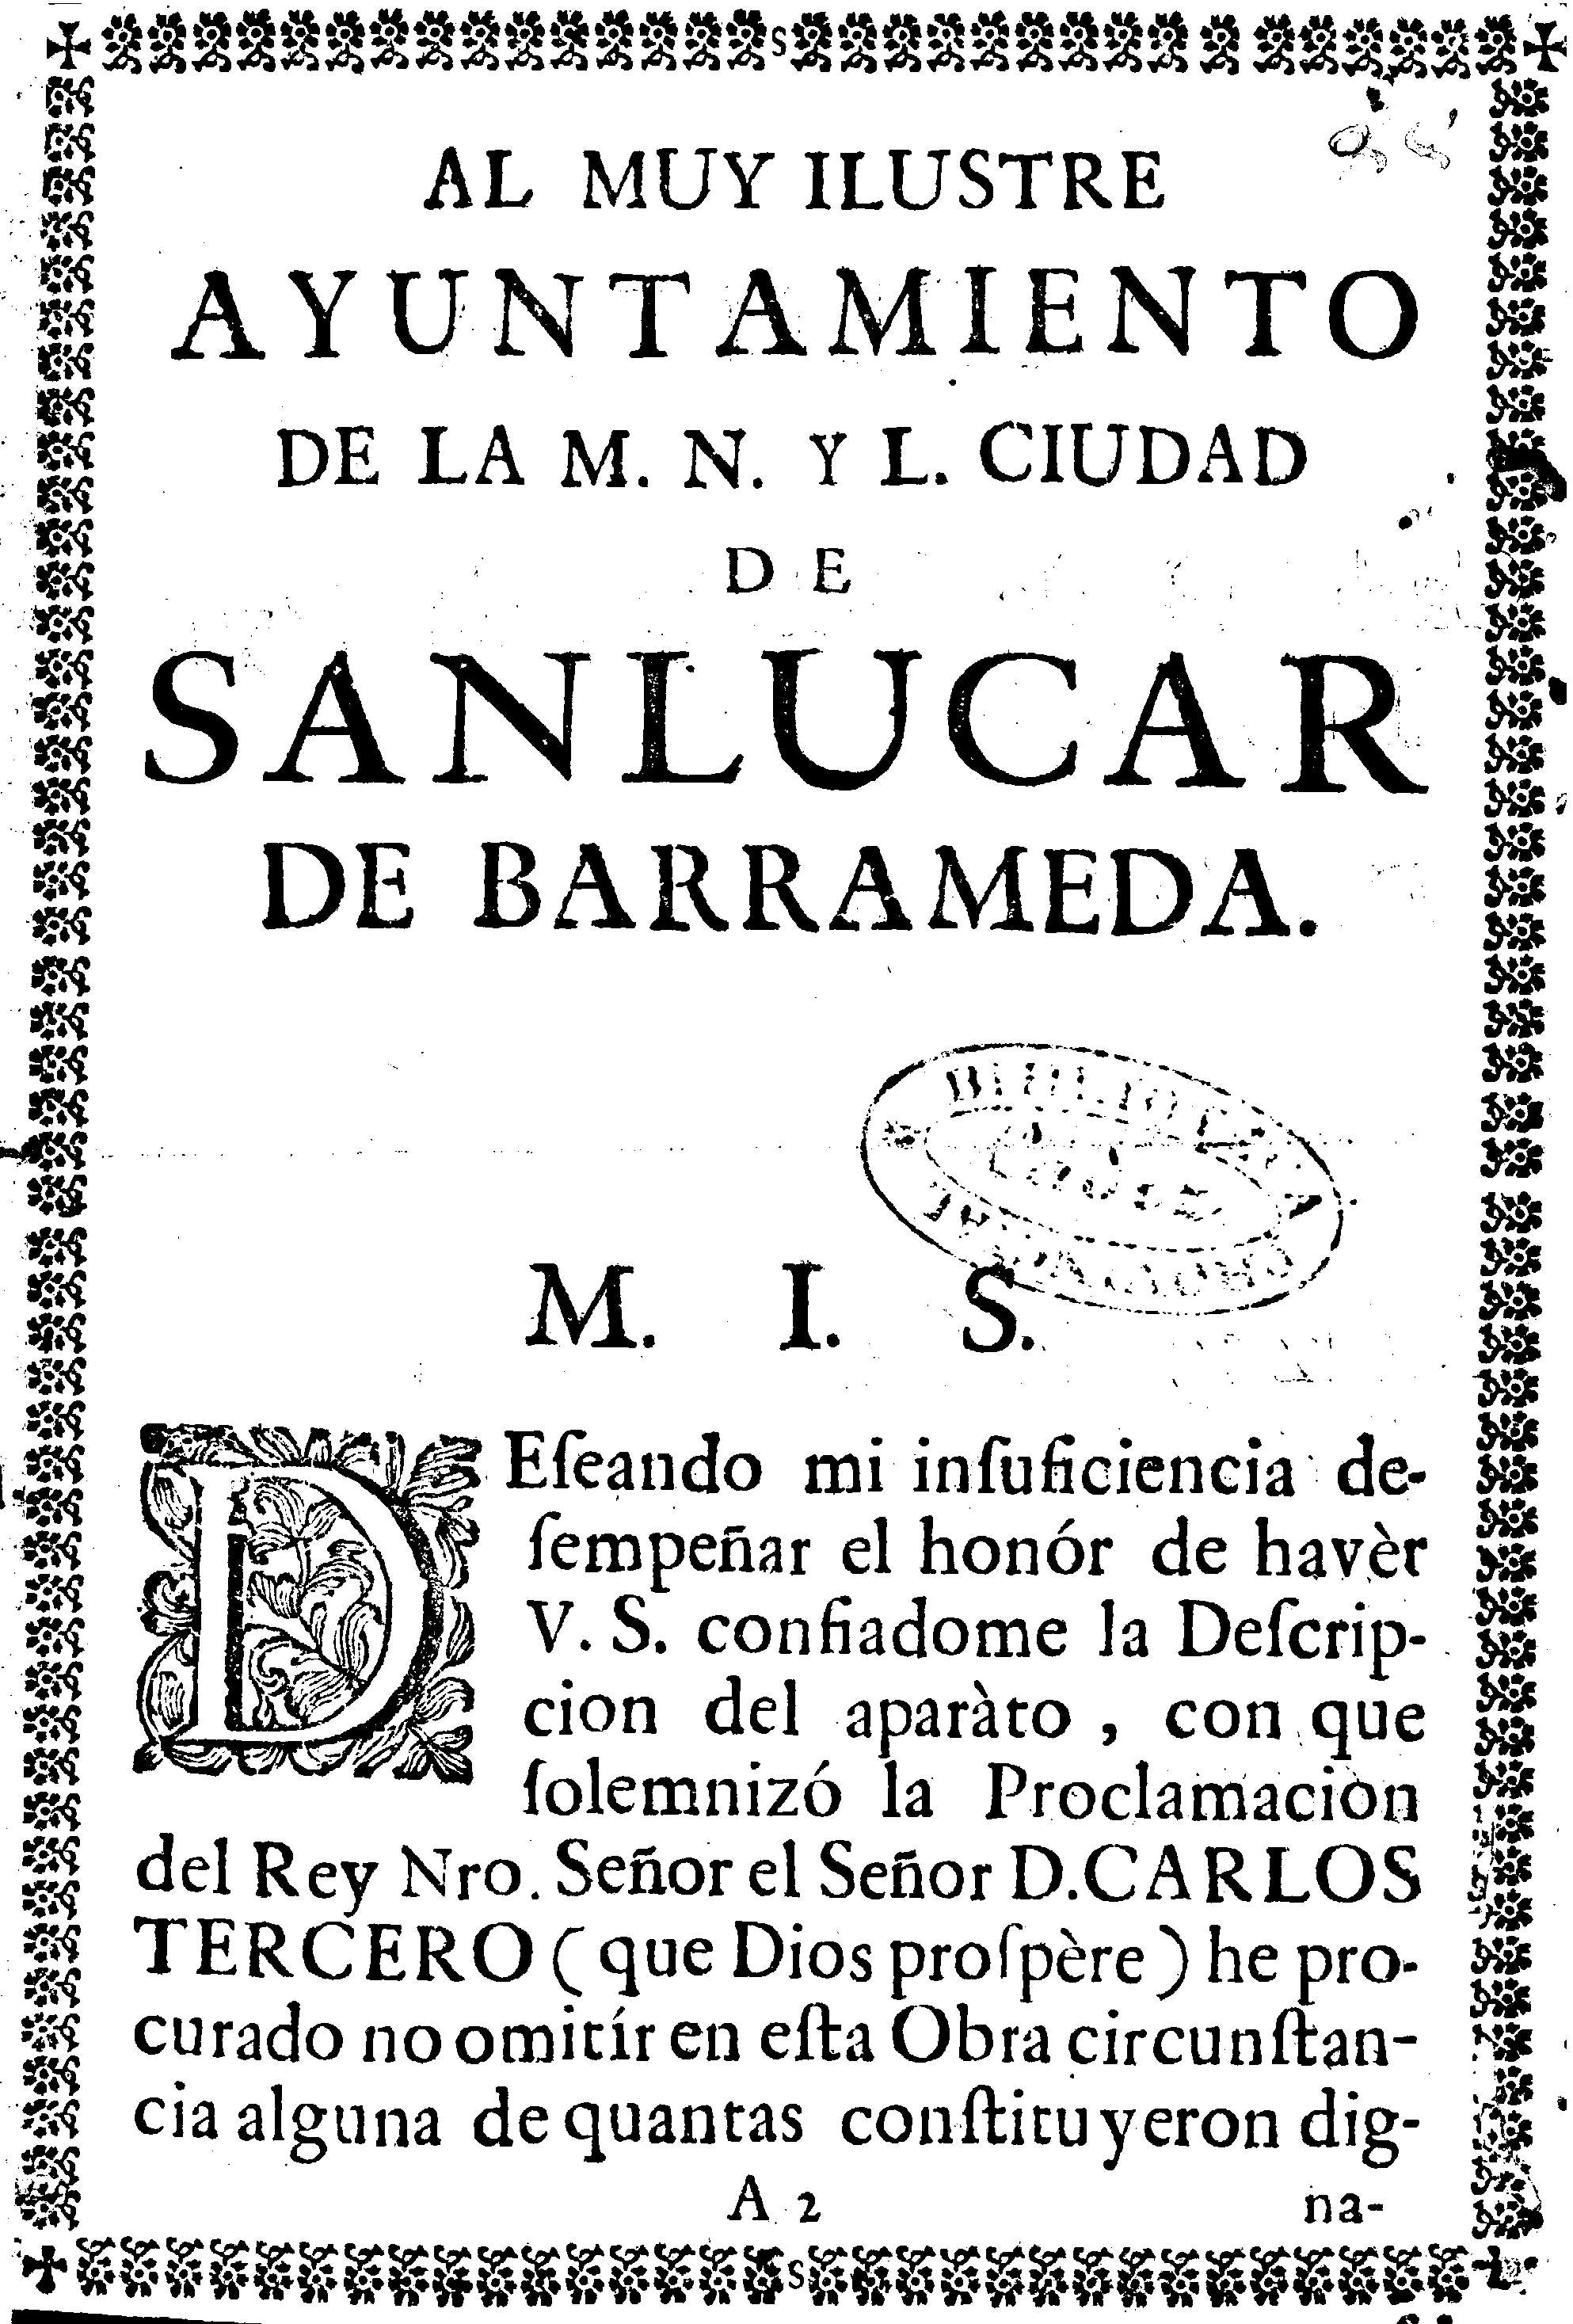 Al muy ilustre de la M.N. y L. ciudad de Sanlucar de Barrameda